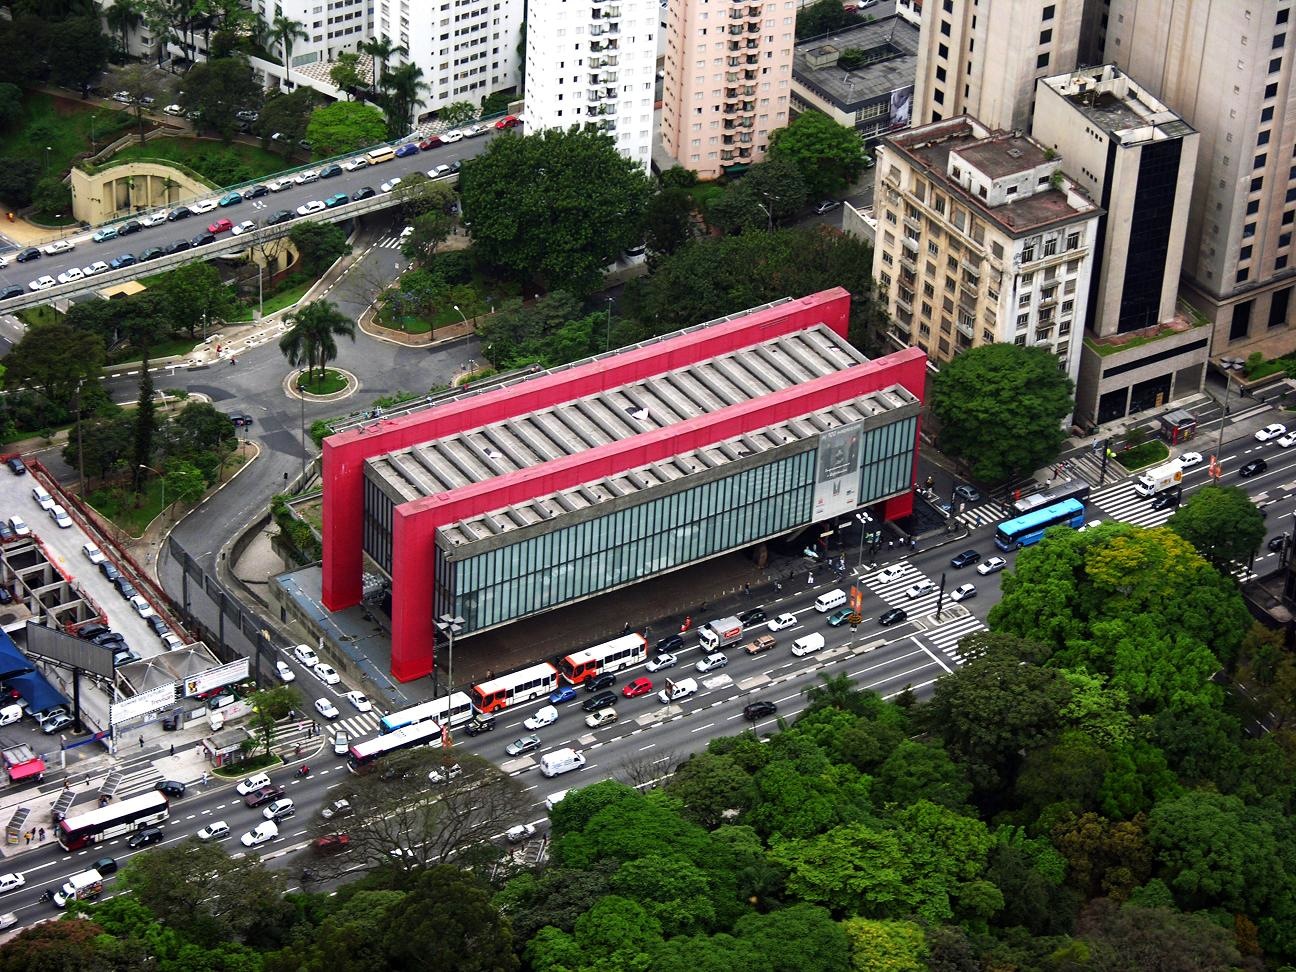 São Paulo Museum of Art - Wikipedia